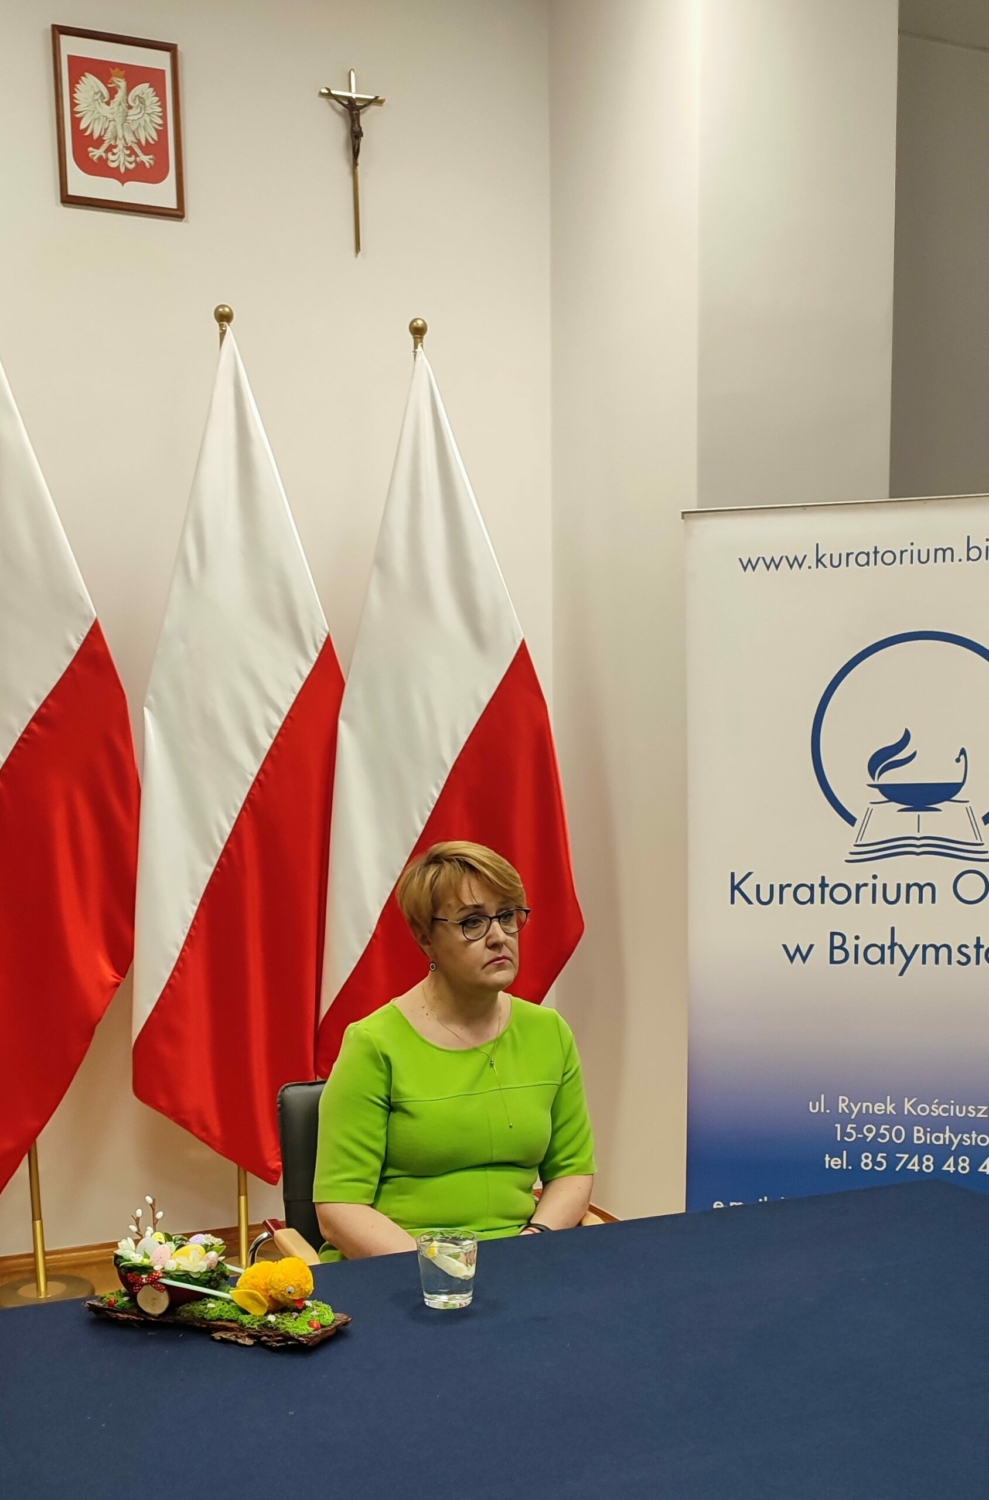 Pani psycholog Katarzyna Kalinowska siedzi przy stole, na tle flag biało-czerwonych, z boku ustawiony baner z logo Kuratorium Oświaty w Białymstoku.